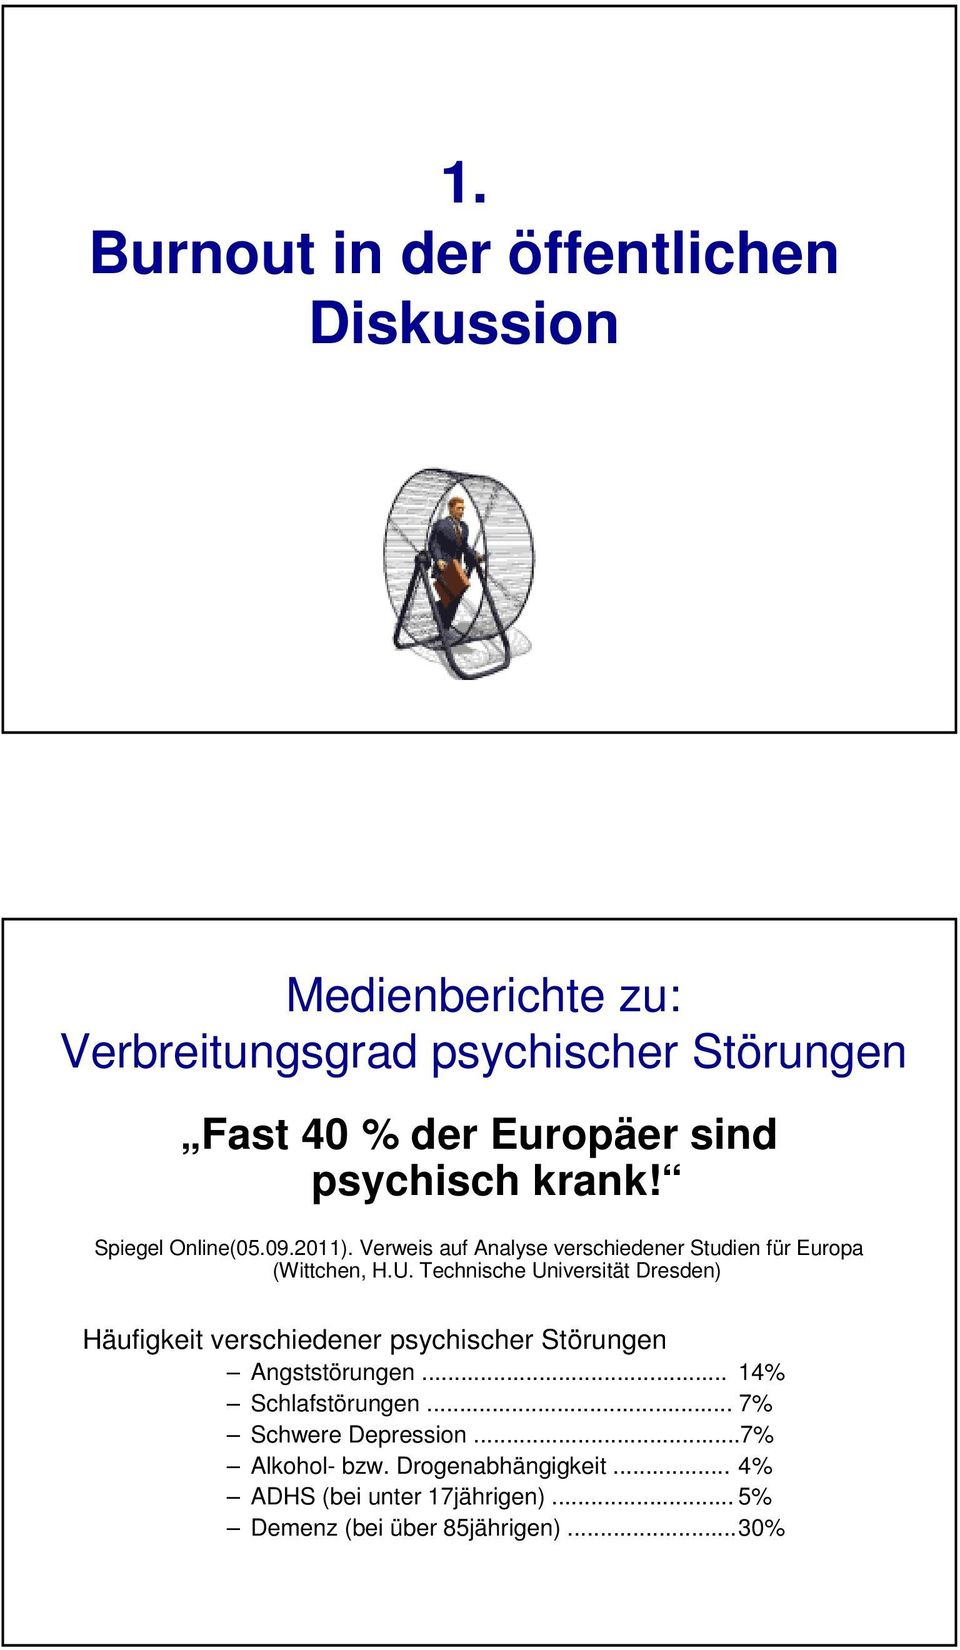 Technische Universität Dresden) Häufigkeit verschiedener psychischer Störungen Angststörungen... 14% Schlafstörungen.